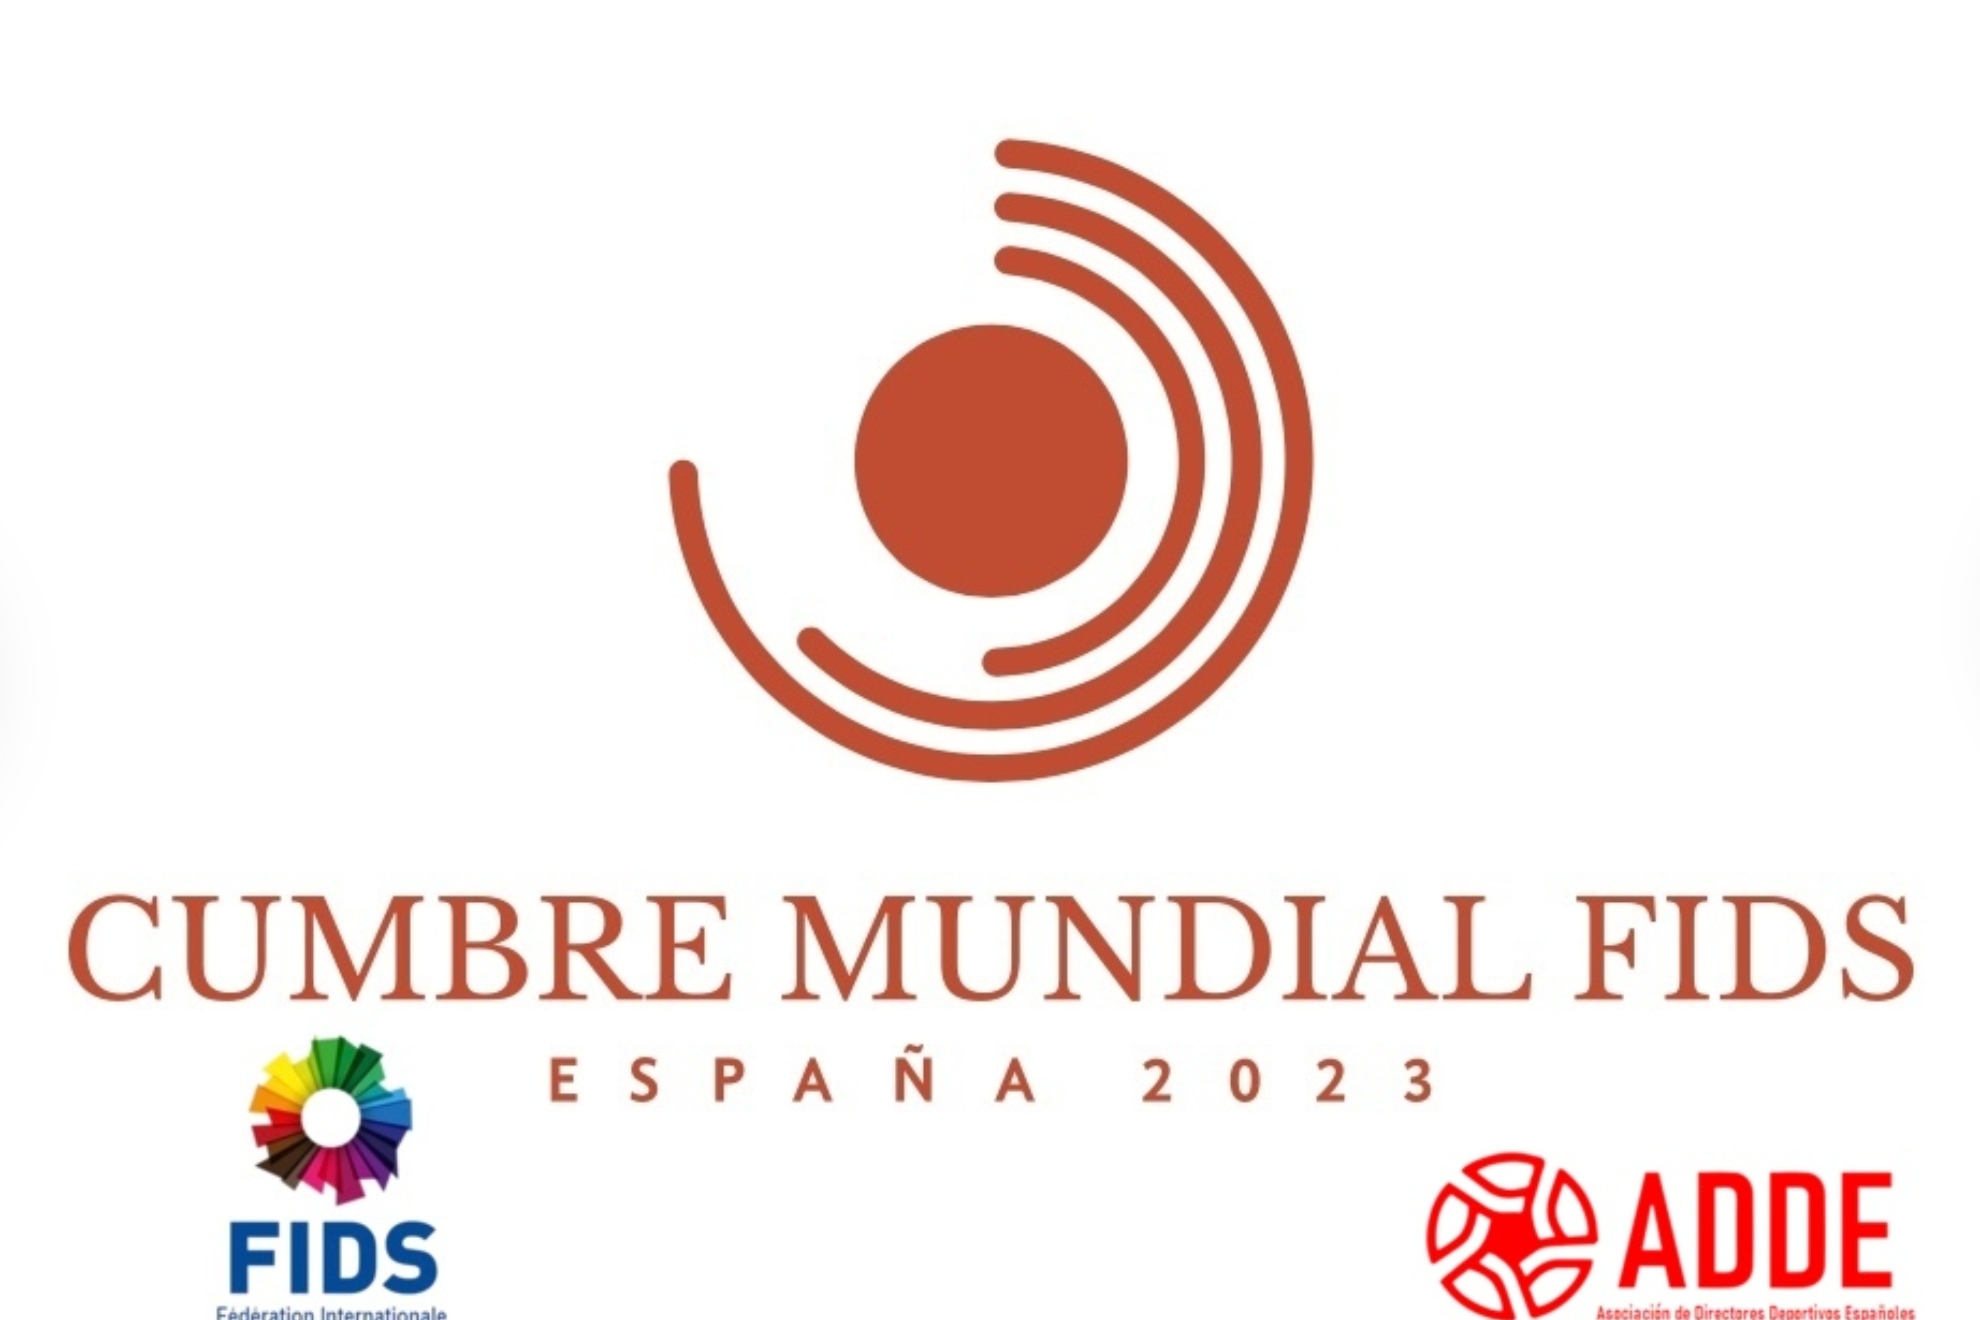 La FIDS concede a España la cumbre mundial